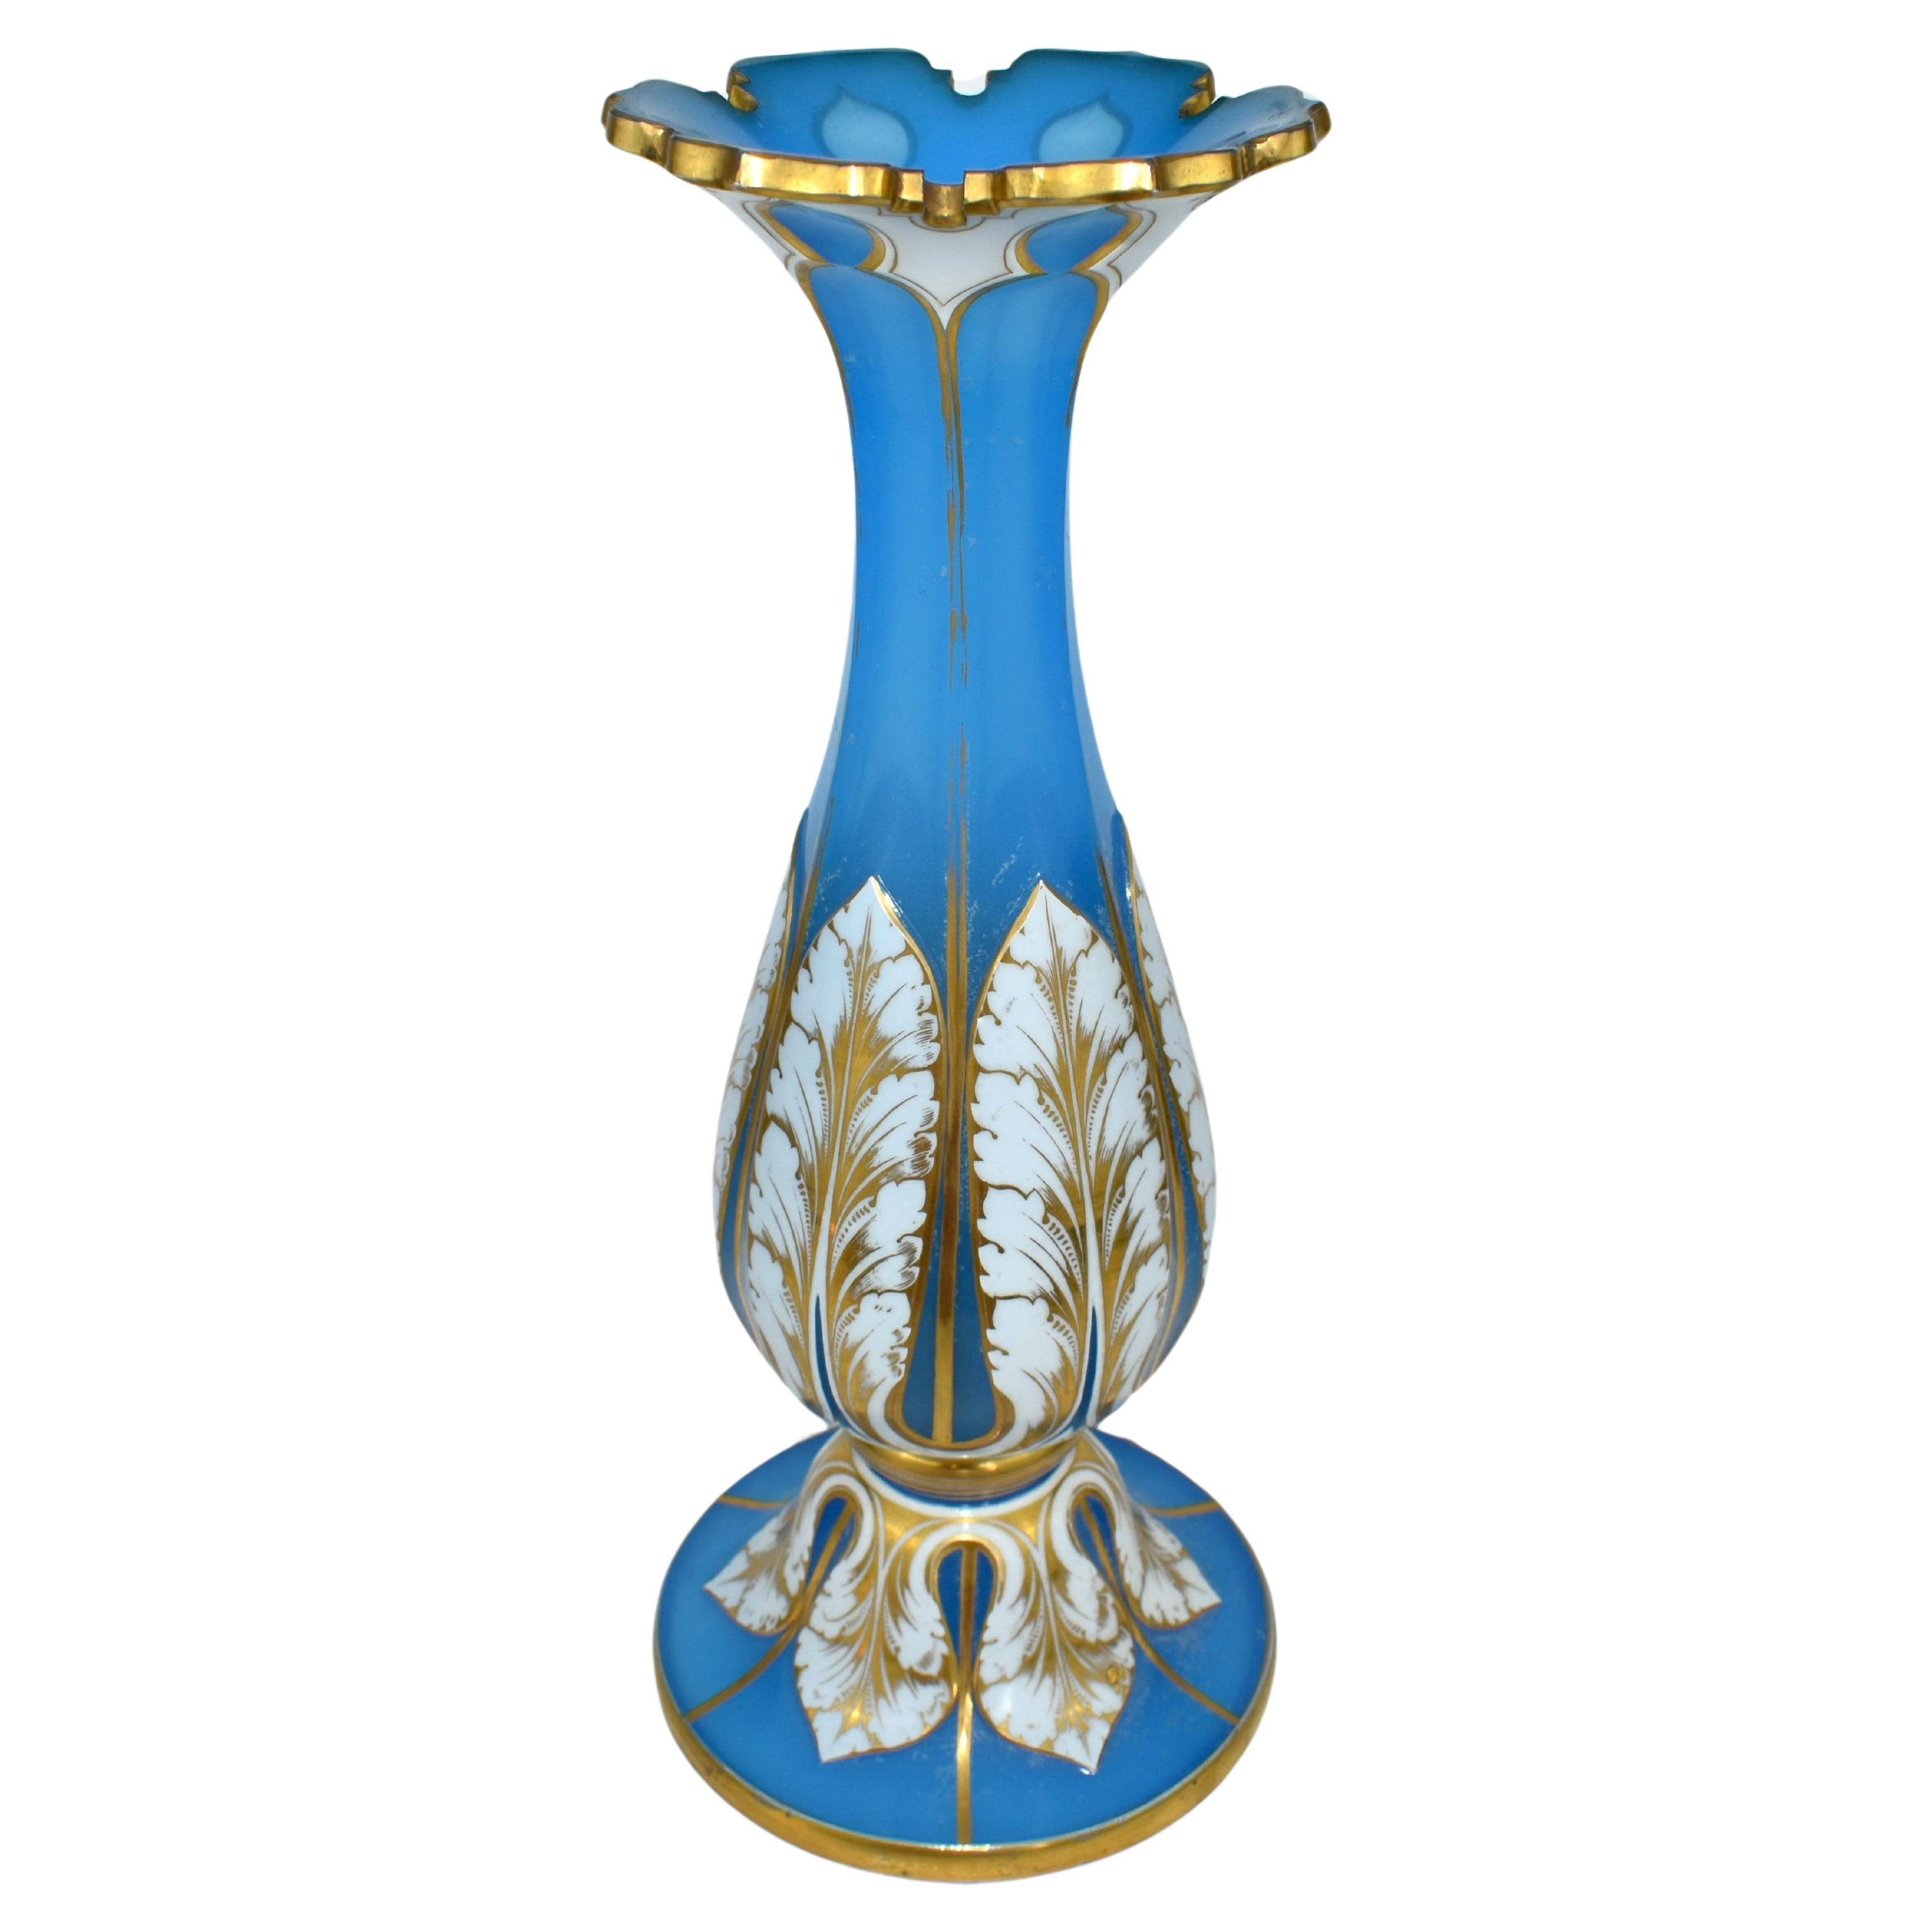 Exceptionnel vase en verre opalin superposé, blanc sur fond bleu

Opaline bleue recouverte de verre opalin blanc laiteux

Bordure dorée coupée

Décoration dorée riche et fine sur tout le pourtour

Bohemia, vers 1860.